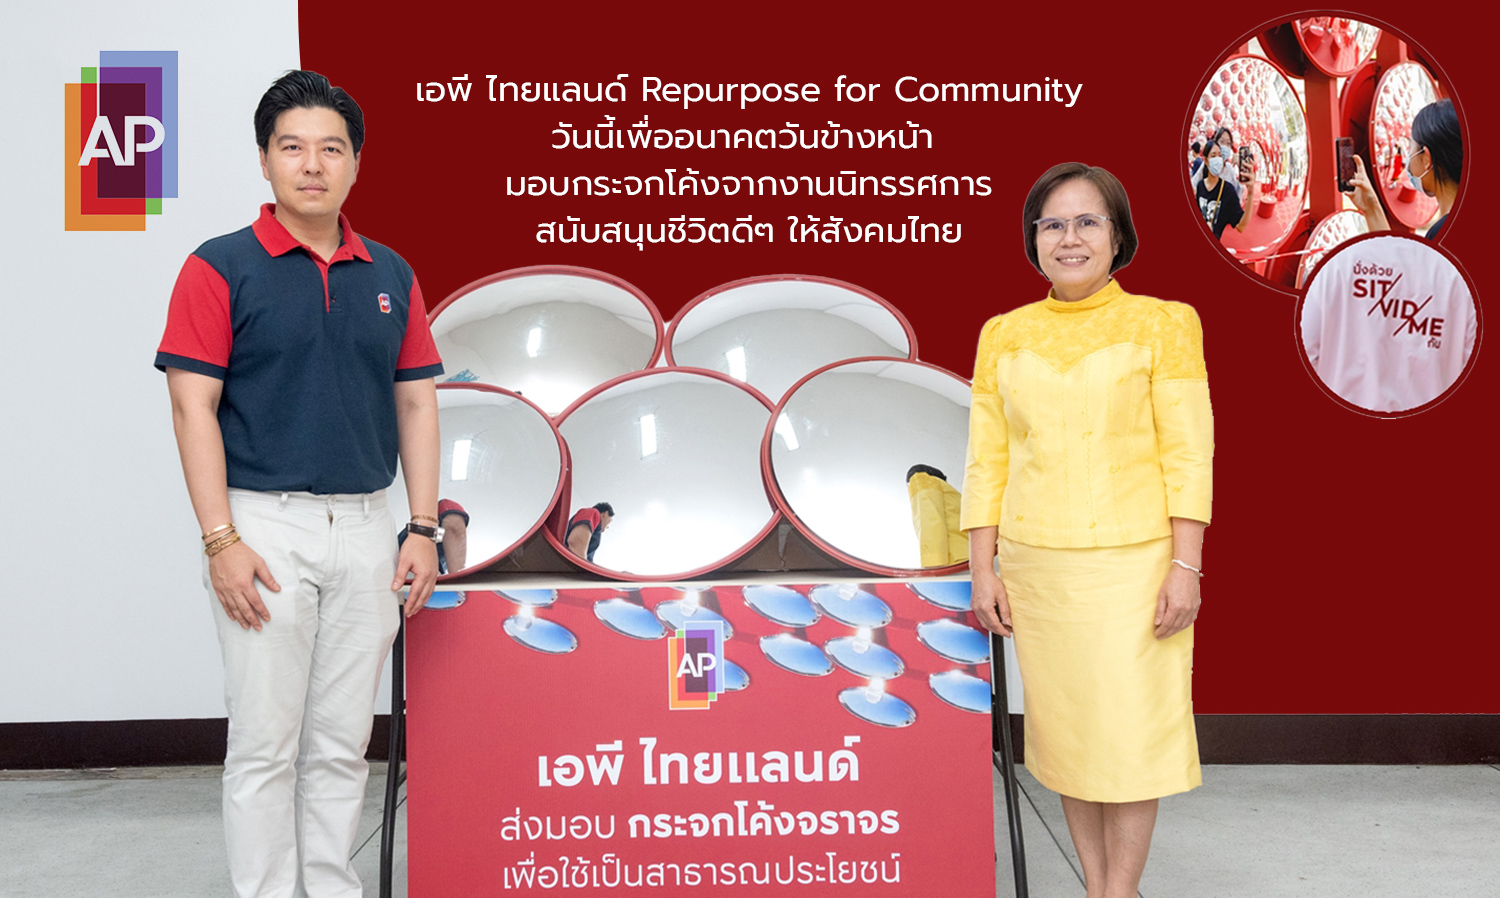 เอพี ไทยแลนด์ Repurpose for Community วันนี้เพื่ออนาคตวันข้างหน้า มอบกระจกโค้งจากงานนิทรรศการ สนับสนุนชีวิตดีๆ ให้สังคมไทย